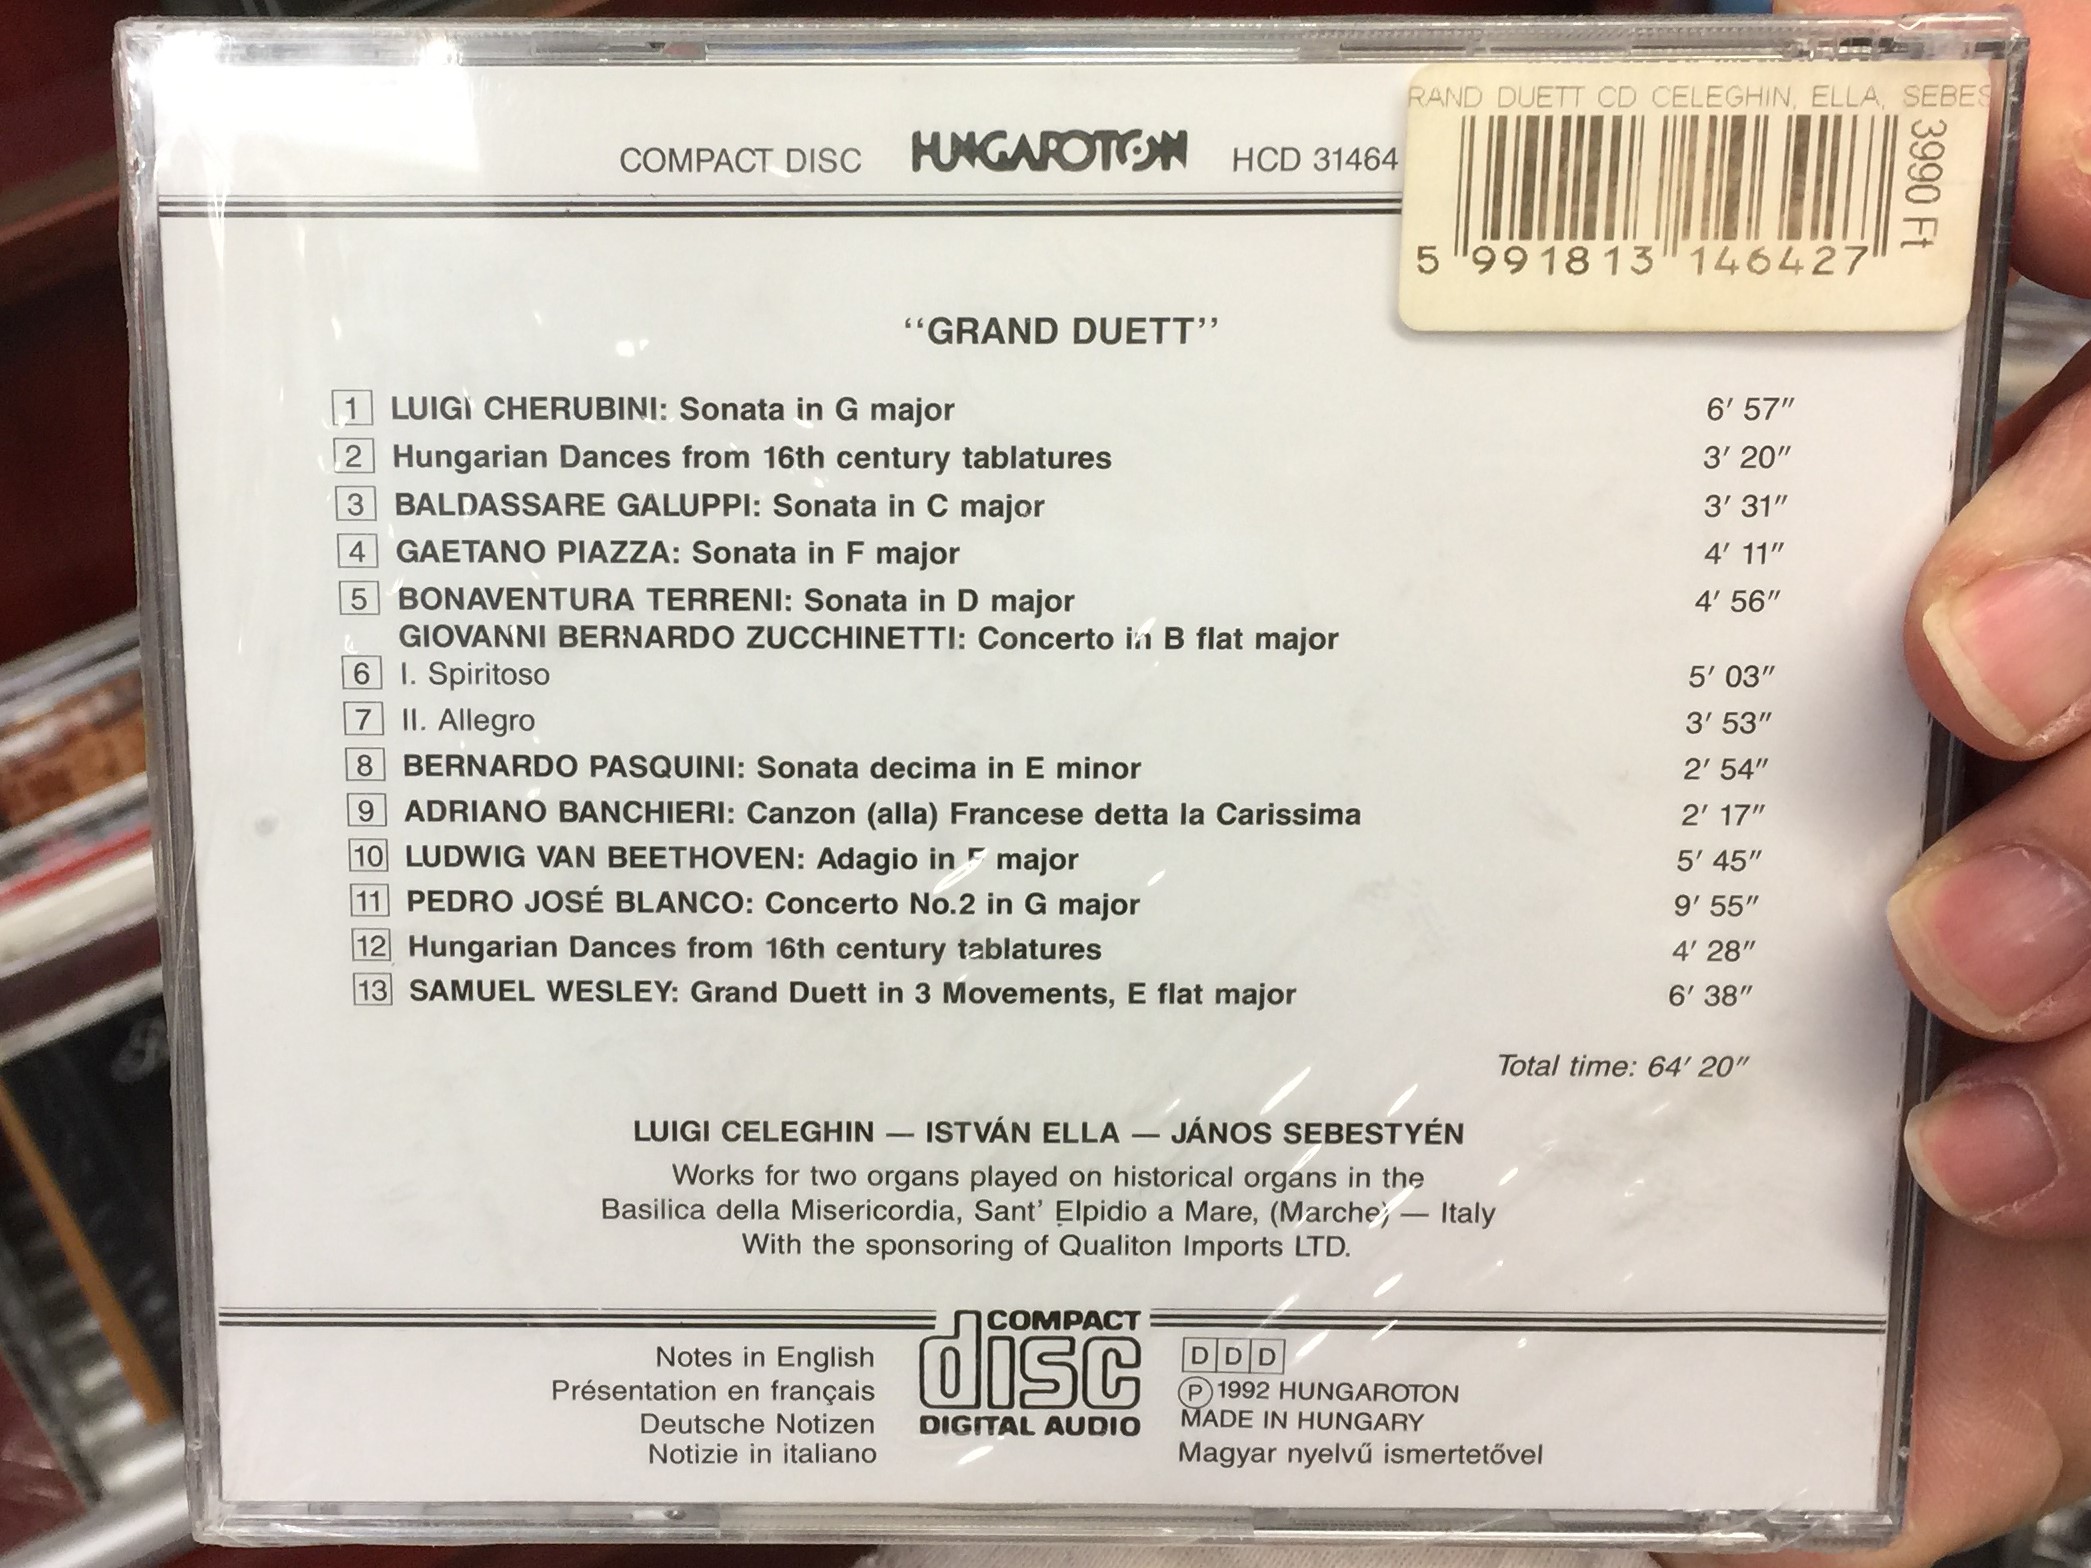 grand-duett-music-for-two-organs-luigi-celeghin-istv-n-ella-j-nos-sebesty-n-hungaroton-audio-cd-1992-stereo-hcd-31464-2-.jpg